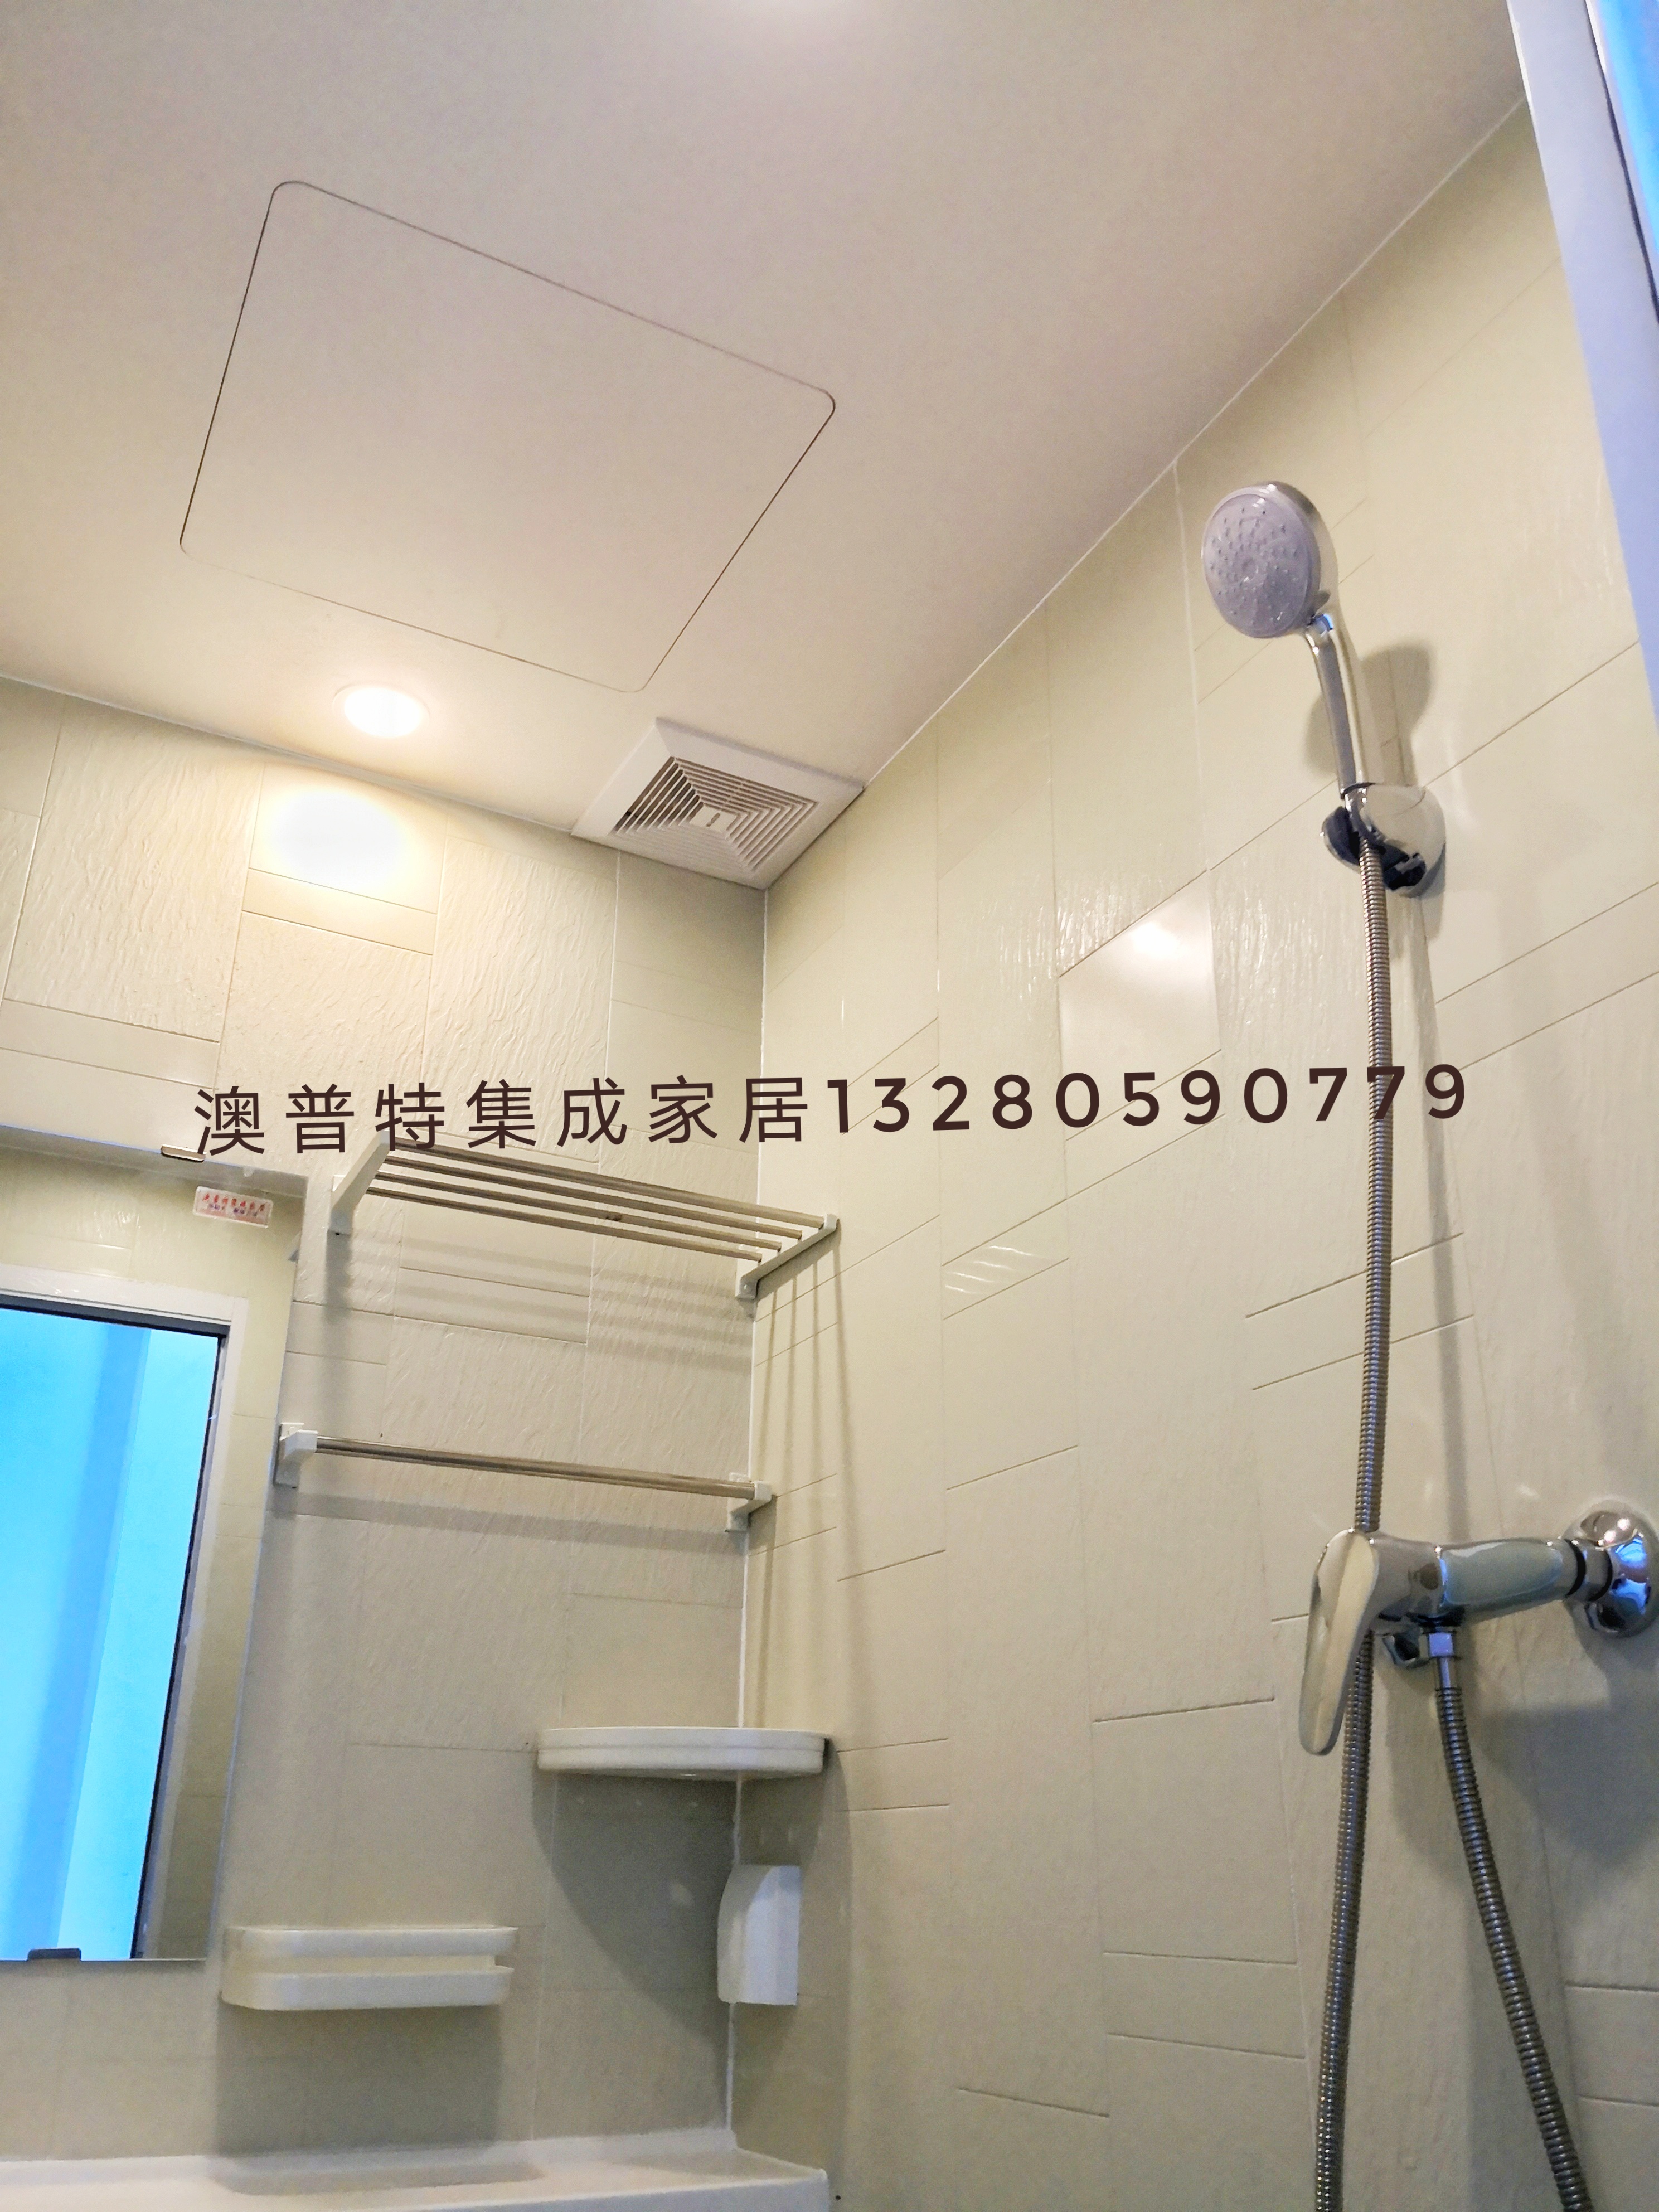 一体式整体卫生间 集式卫生间 临沂澳普特集成家居 日式浴室 厂家价格